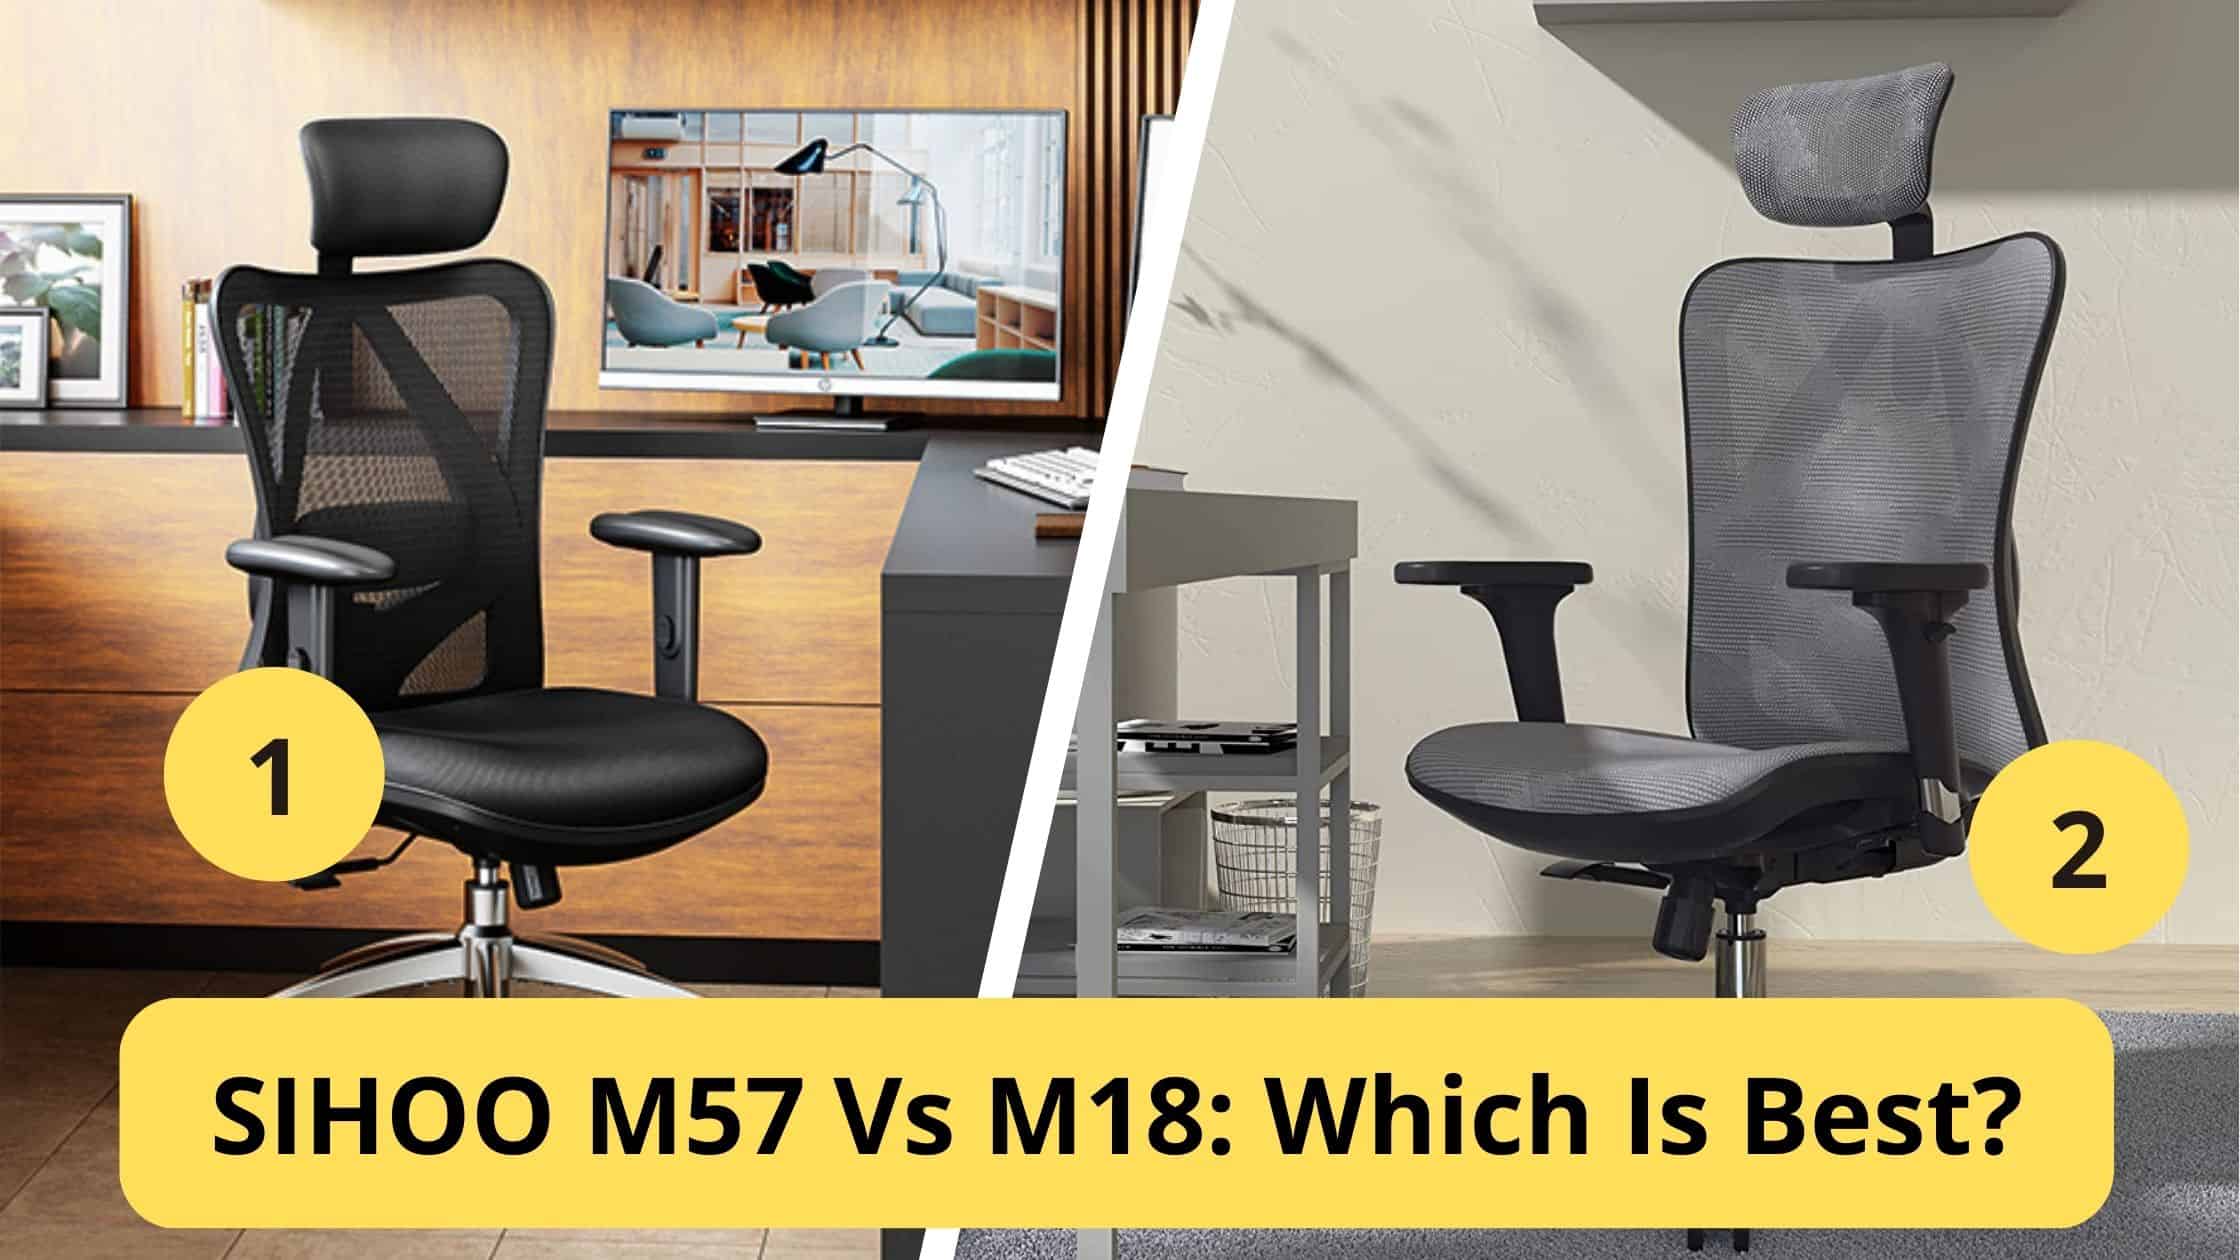 sihoo m57 vs m18: which is best